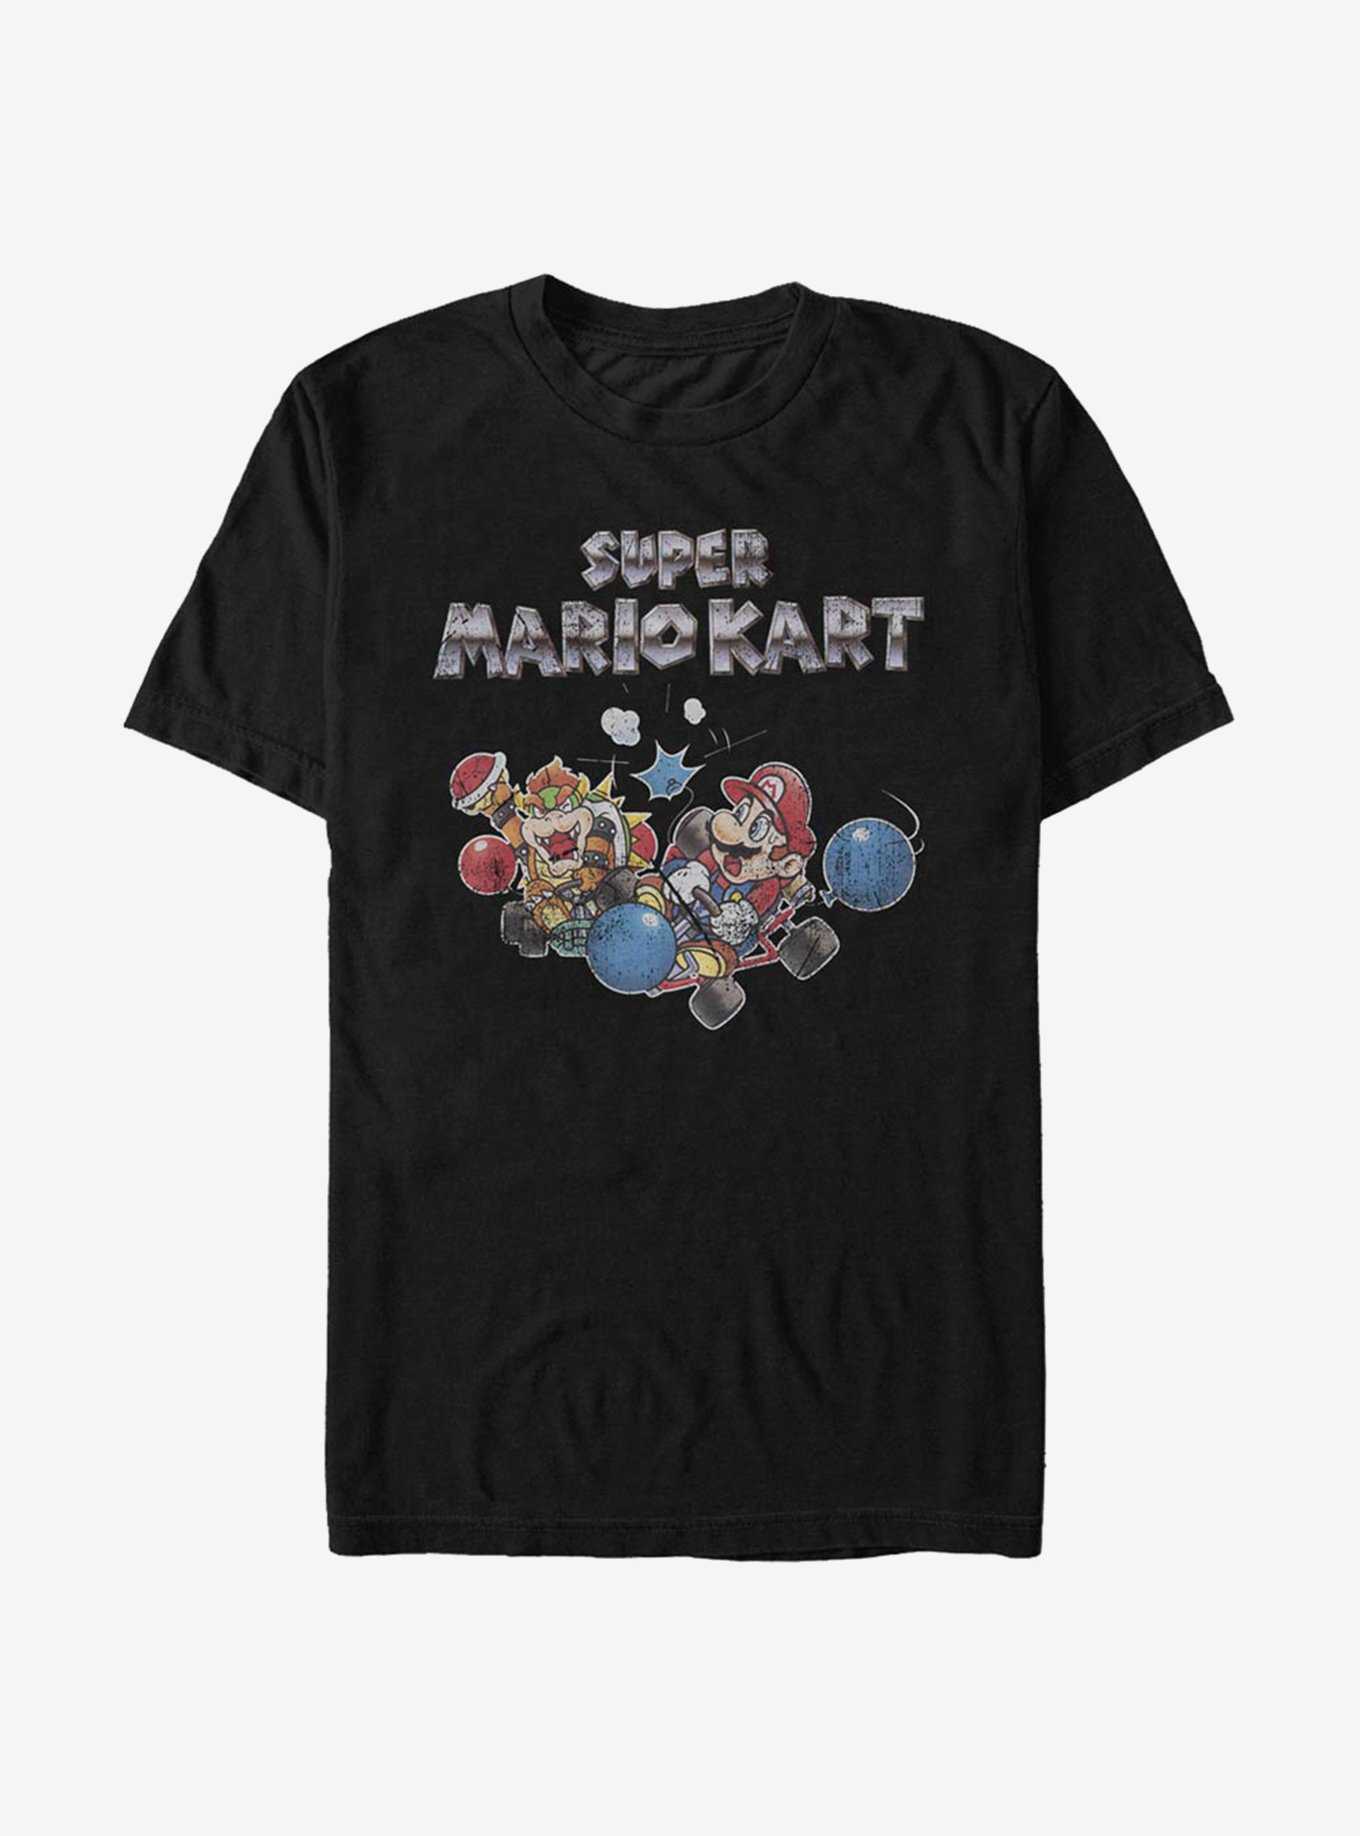 Super Mario Kart Battle T-Shirt, , hi-res